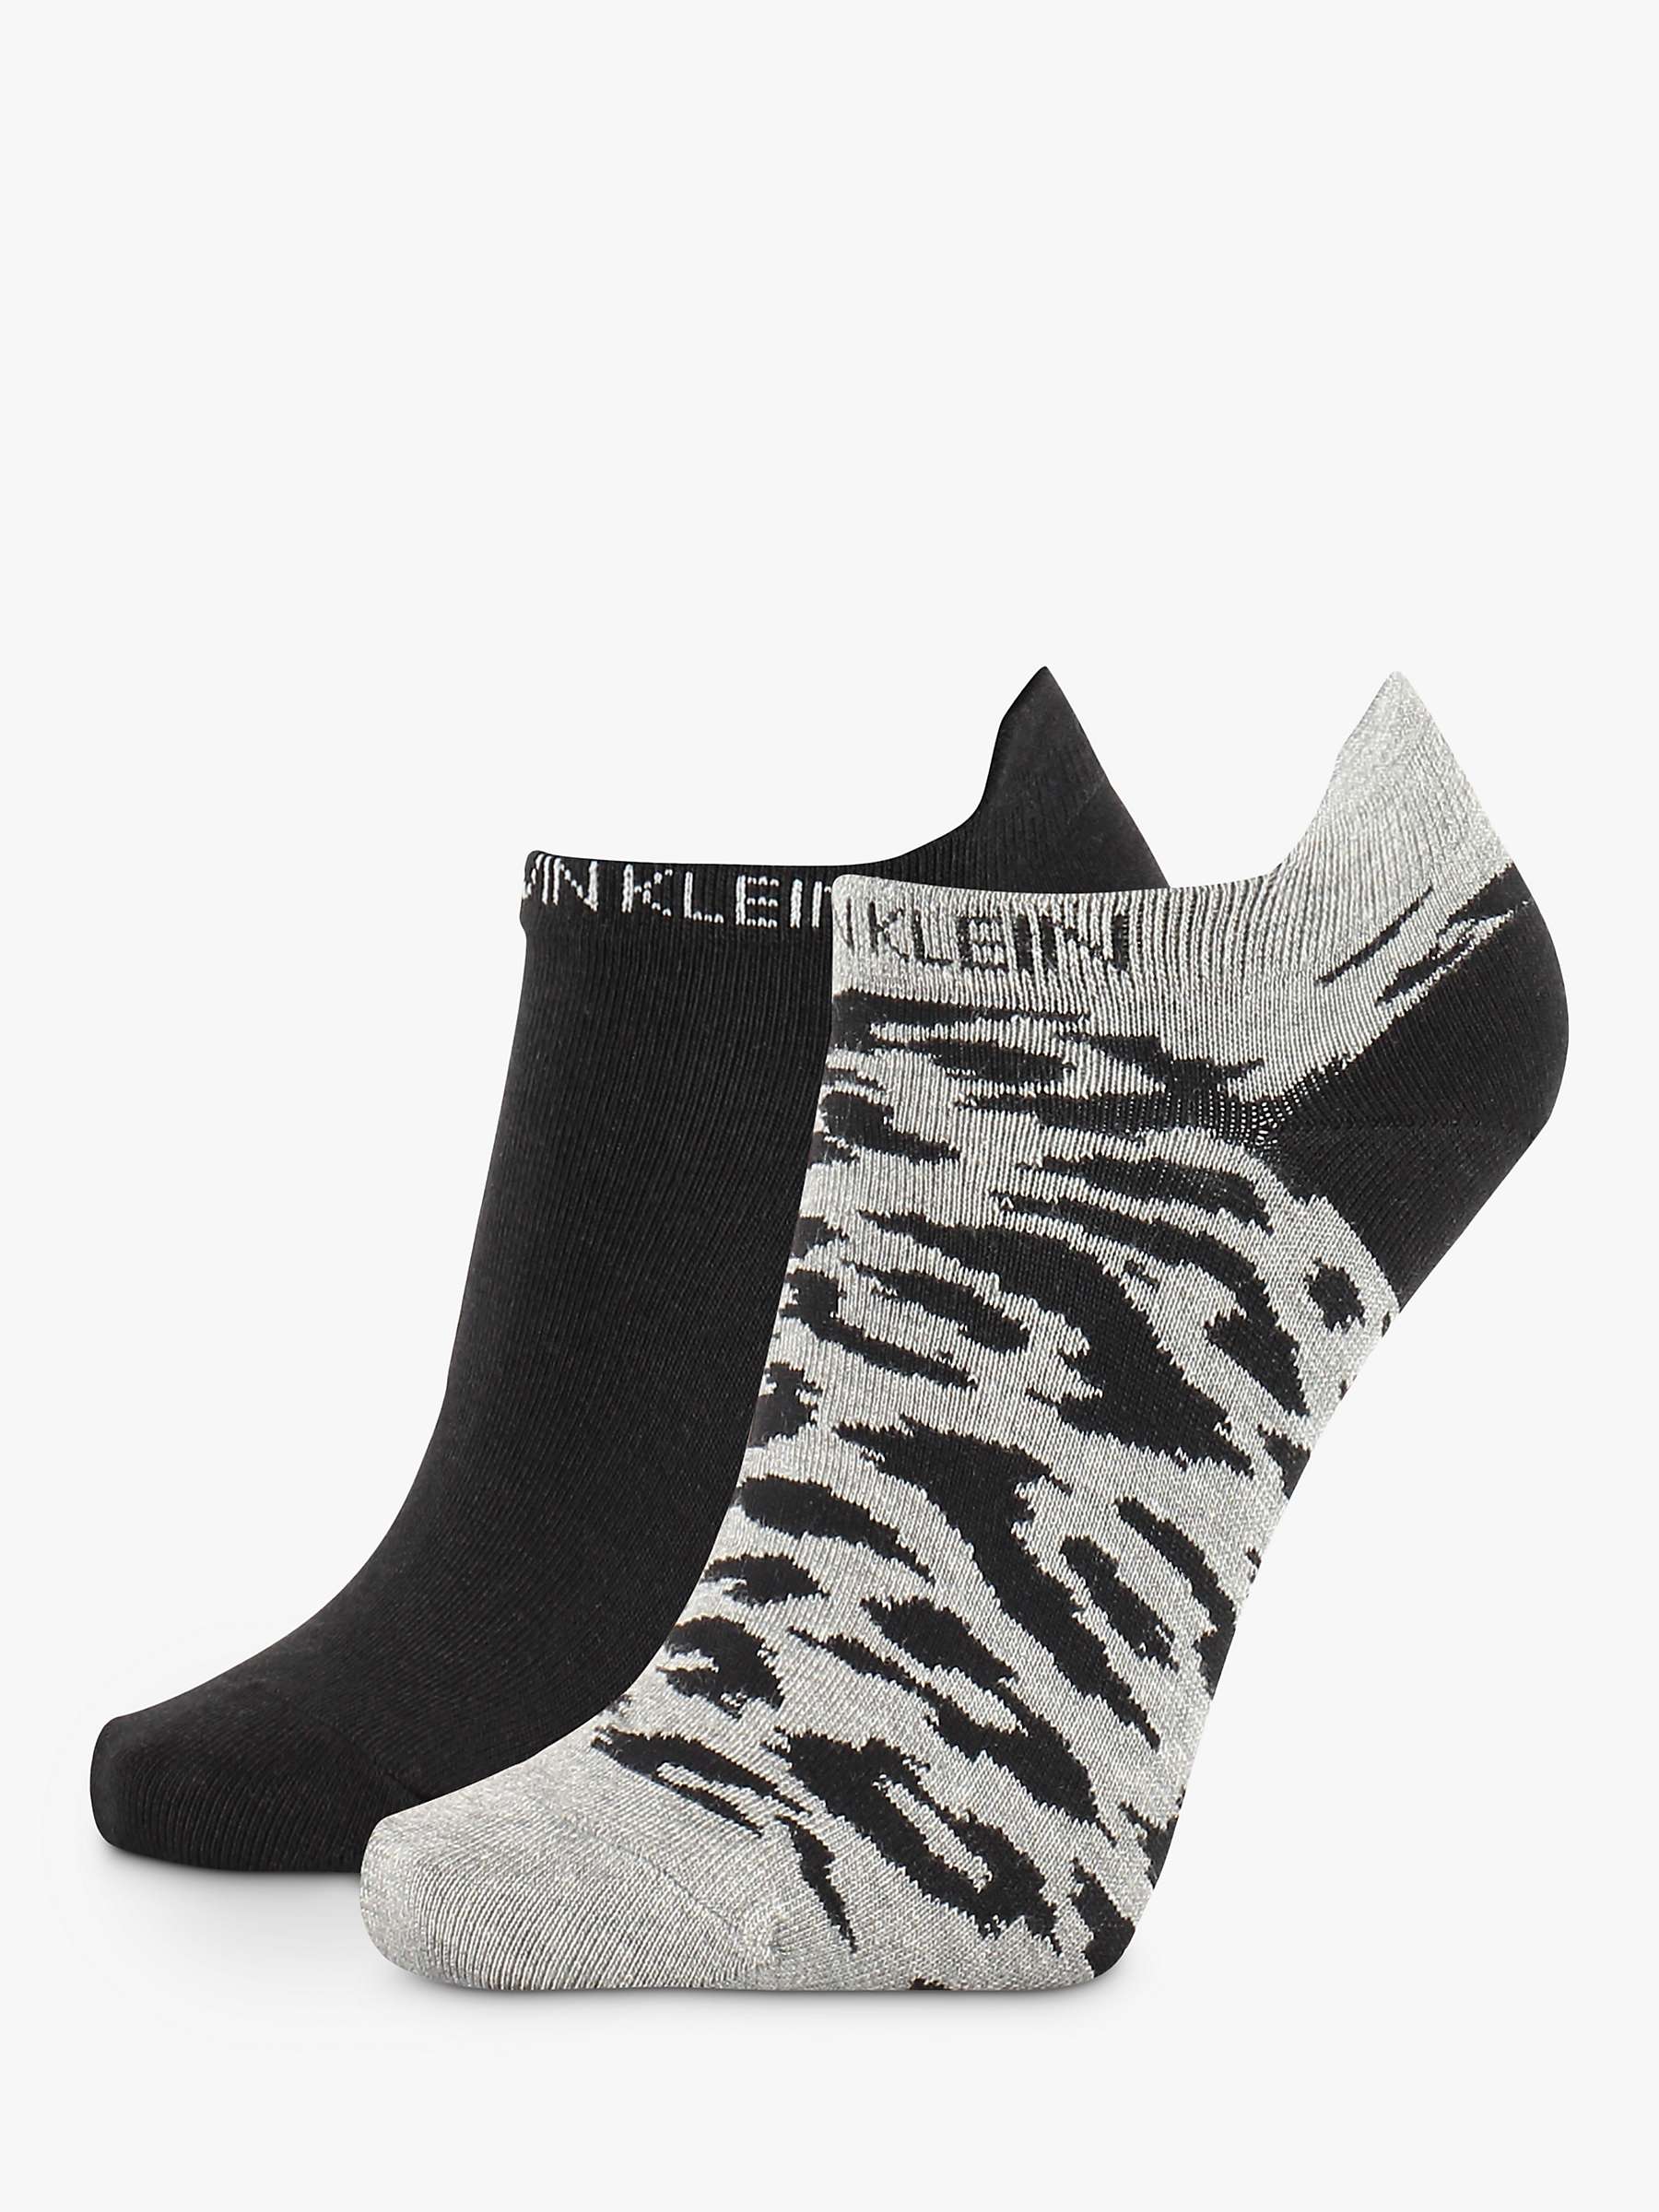 Buy Calvin Klein Leopard Liner Socks, Pack of 2 Online at johnlewis.com